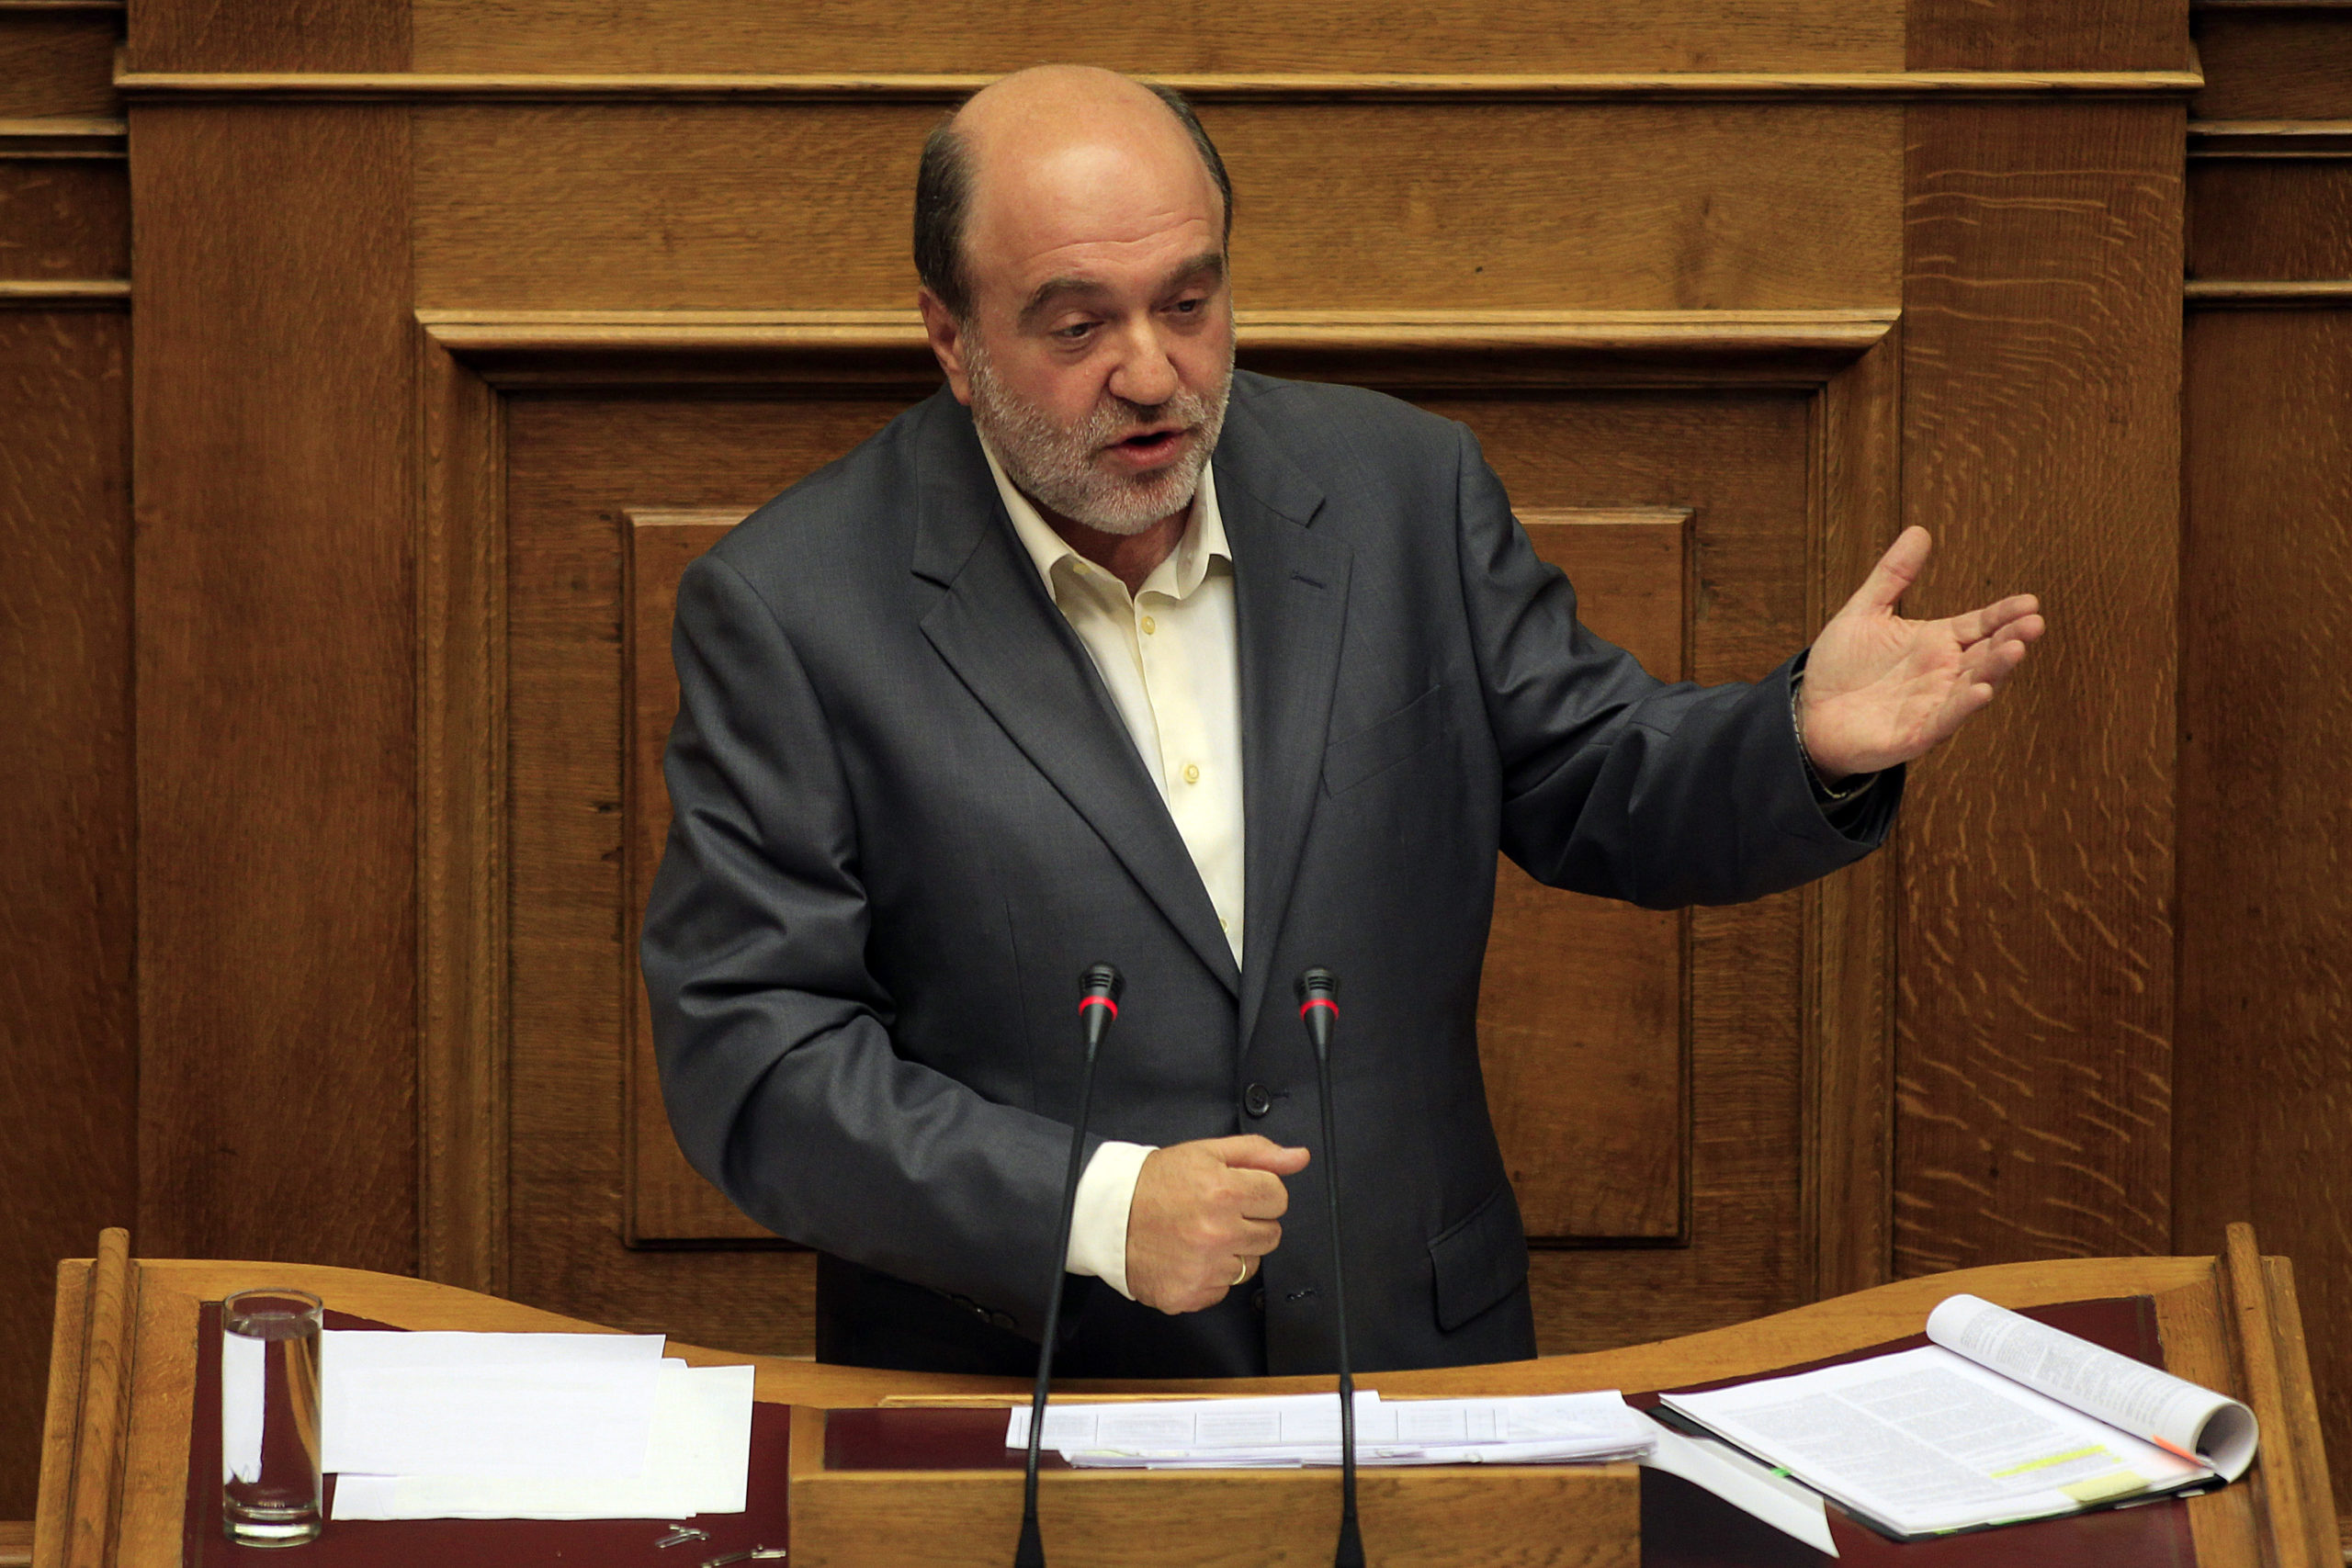 Δεν έχει λάβει επίσημη παραίτηση του επικεφαλής του ΣΔΟΕ ο Αλεξιάδης